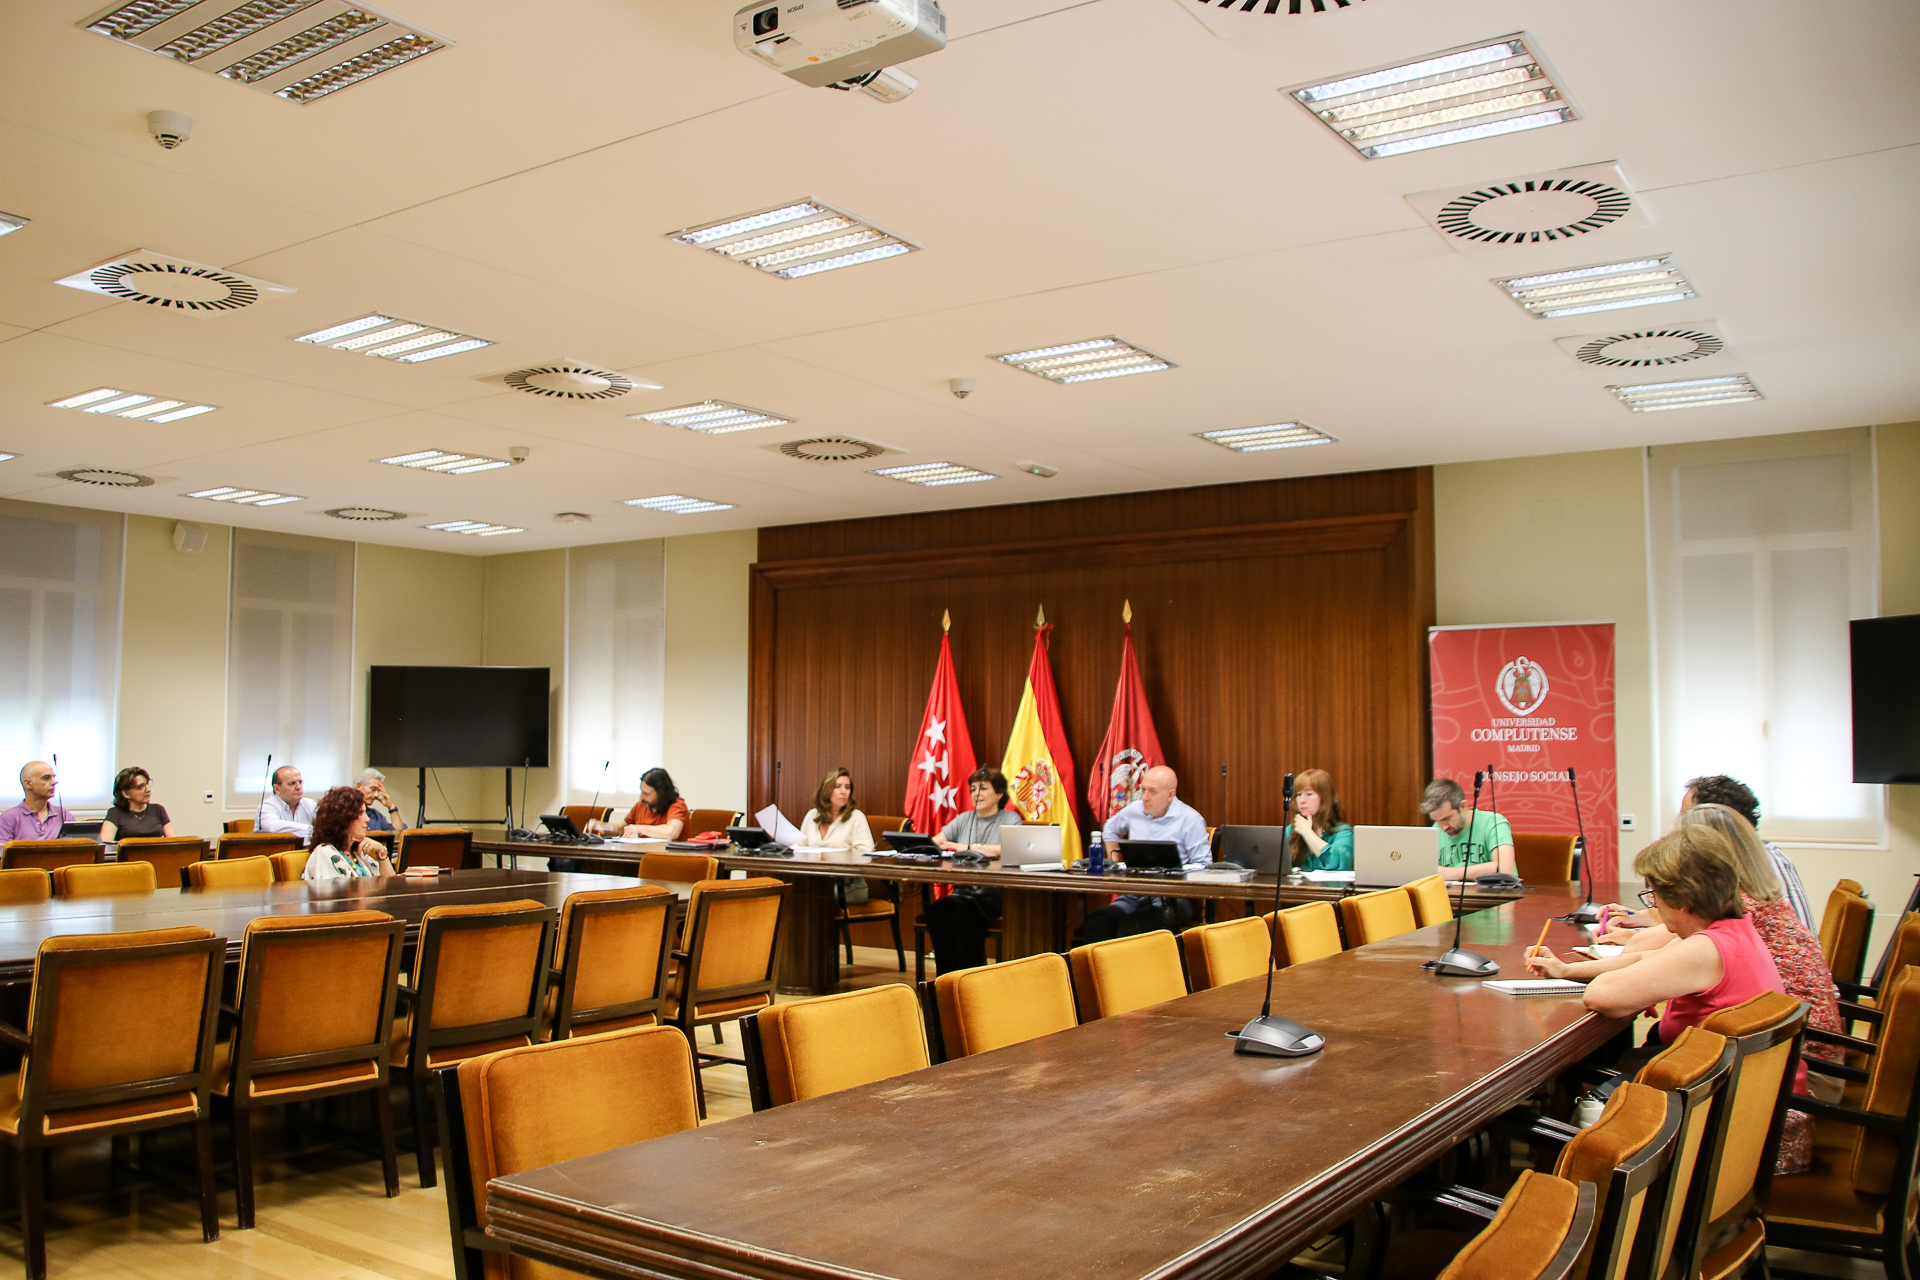 reunión de la comisión de patrimonio histórico artístico de la universidad complutense de madrid-5